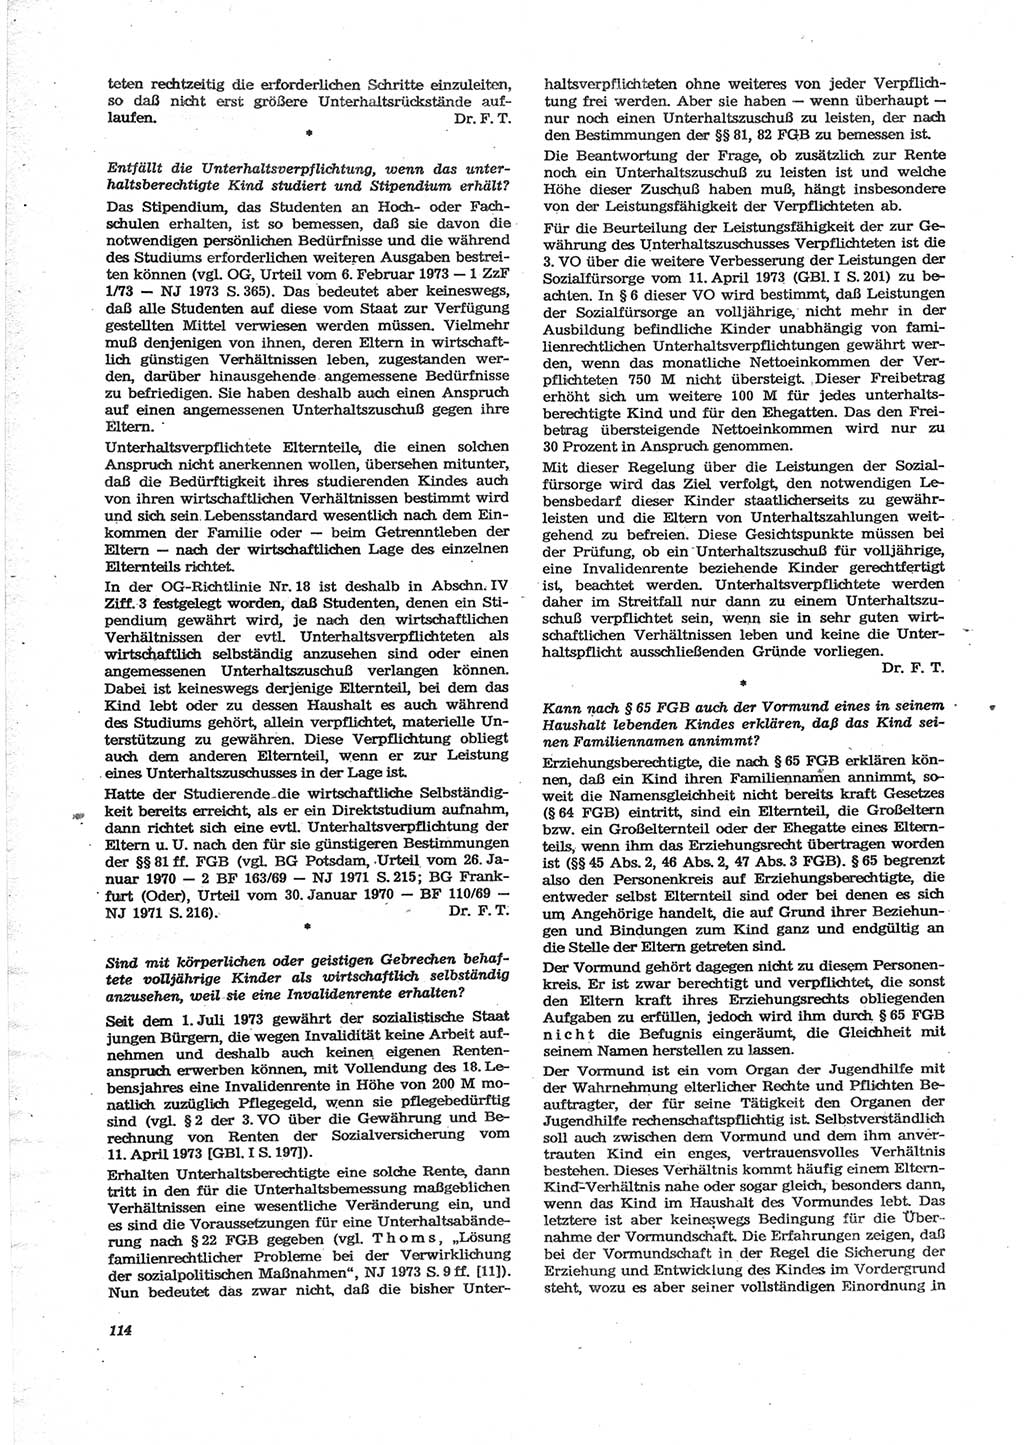 Neue Justiz (NJ), Zeitschrift für Recht und Rechtswissenschaft [Deutsche Demokratische Republik (DDR)], 28. Jahrgang 1974, Seite 114 (NJ DDR 1974, S. 114)